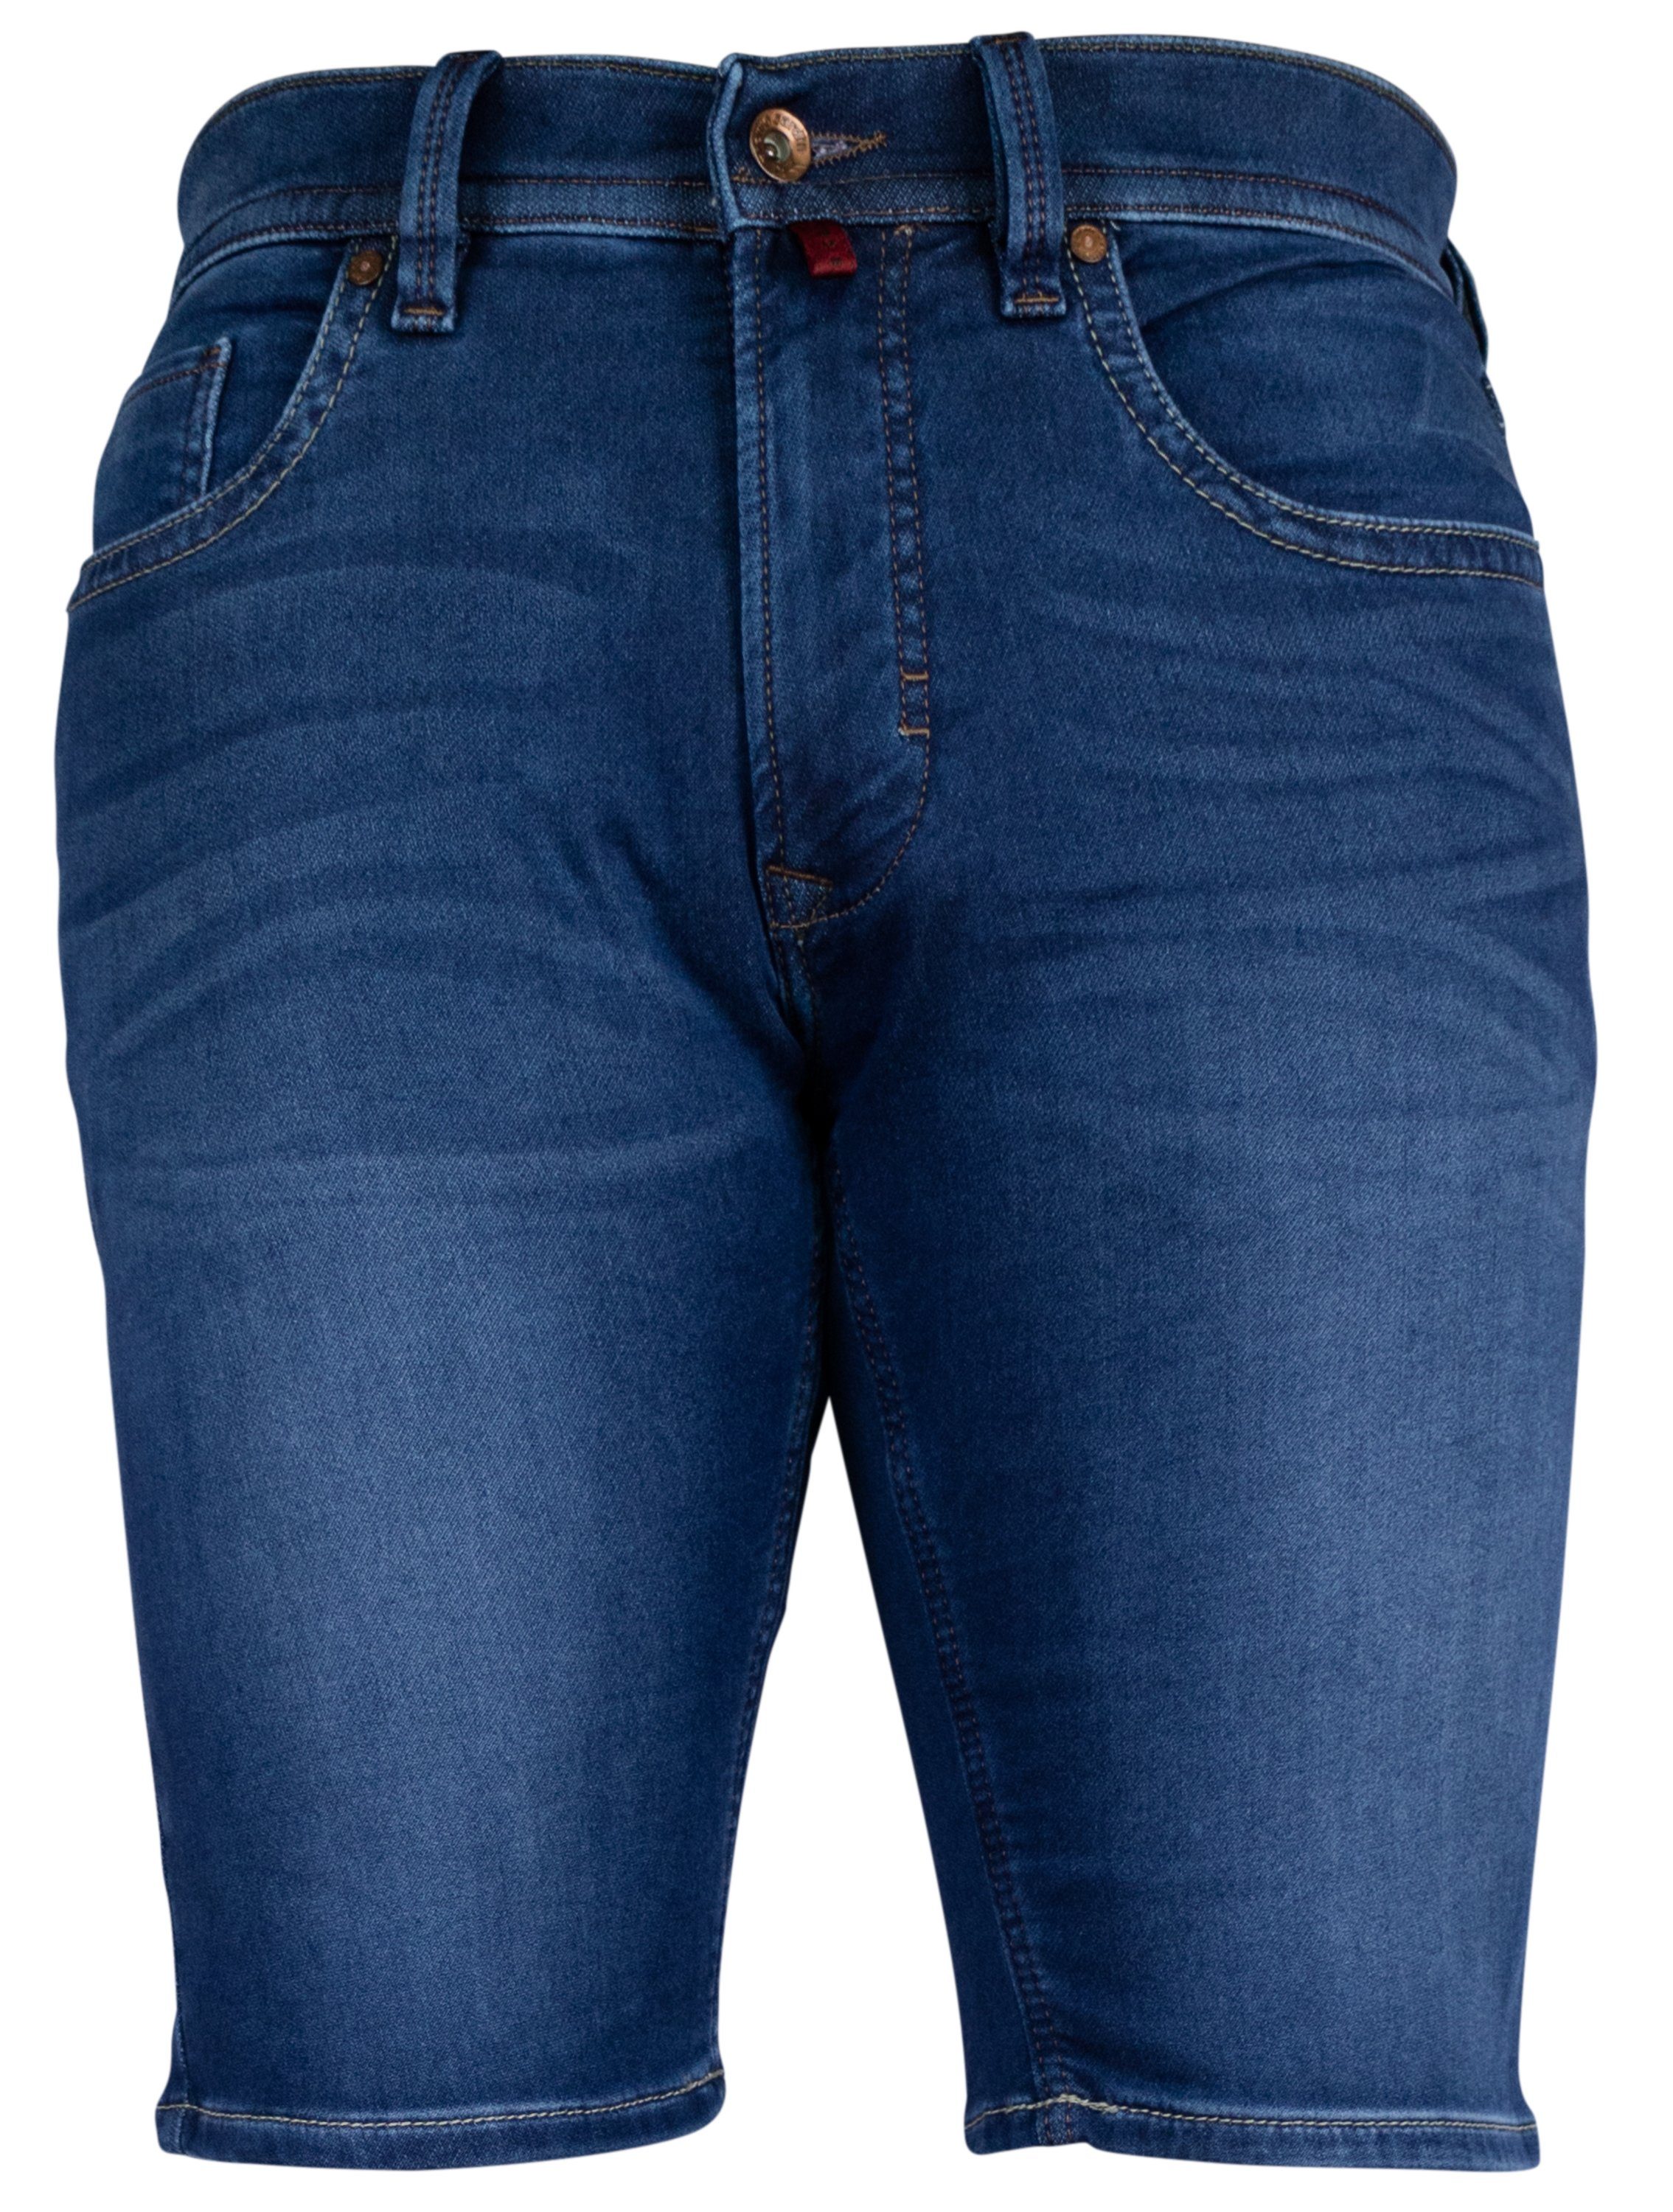 Pierre SHORTS CARDIN 5-Pocket-Jeans dark PIERRE 7690.41 Cardin 3476 DEAUVILLE blue